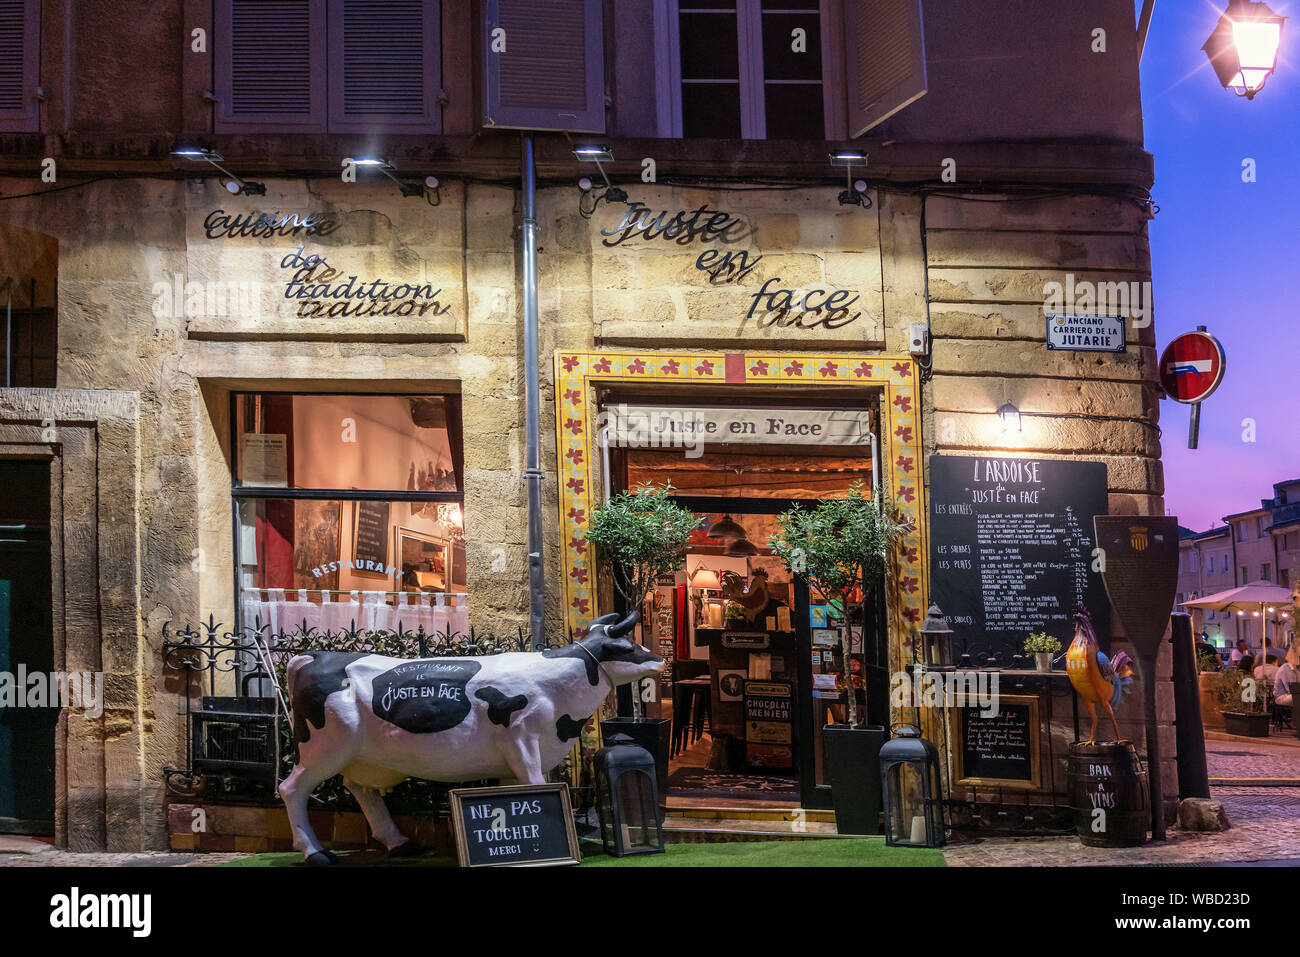 Juste en Face Restaurant , Place des Cardeurs in Aix en Provence, france Stock Photo